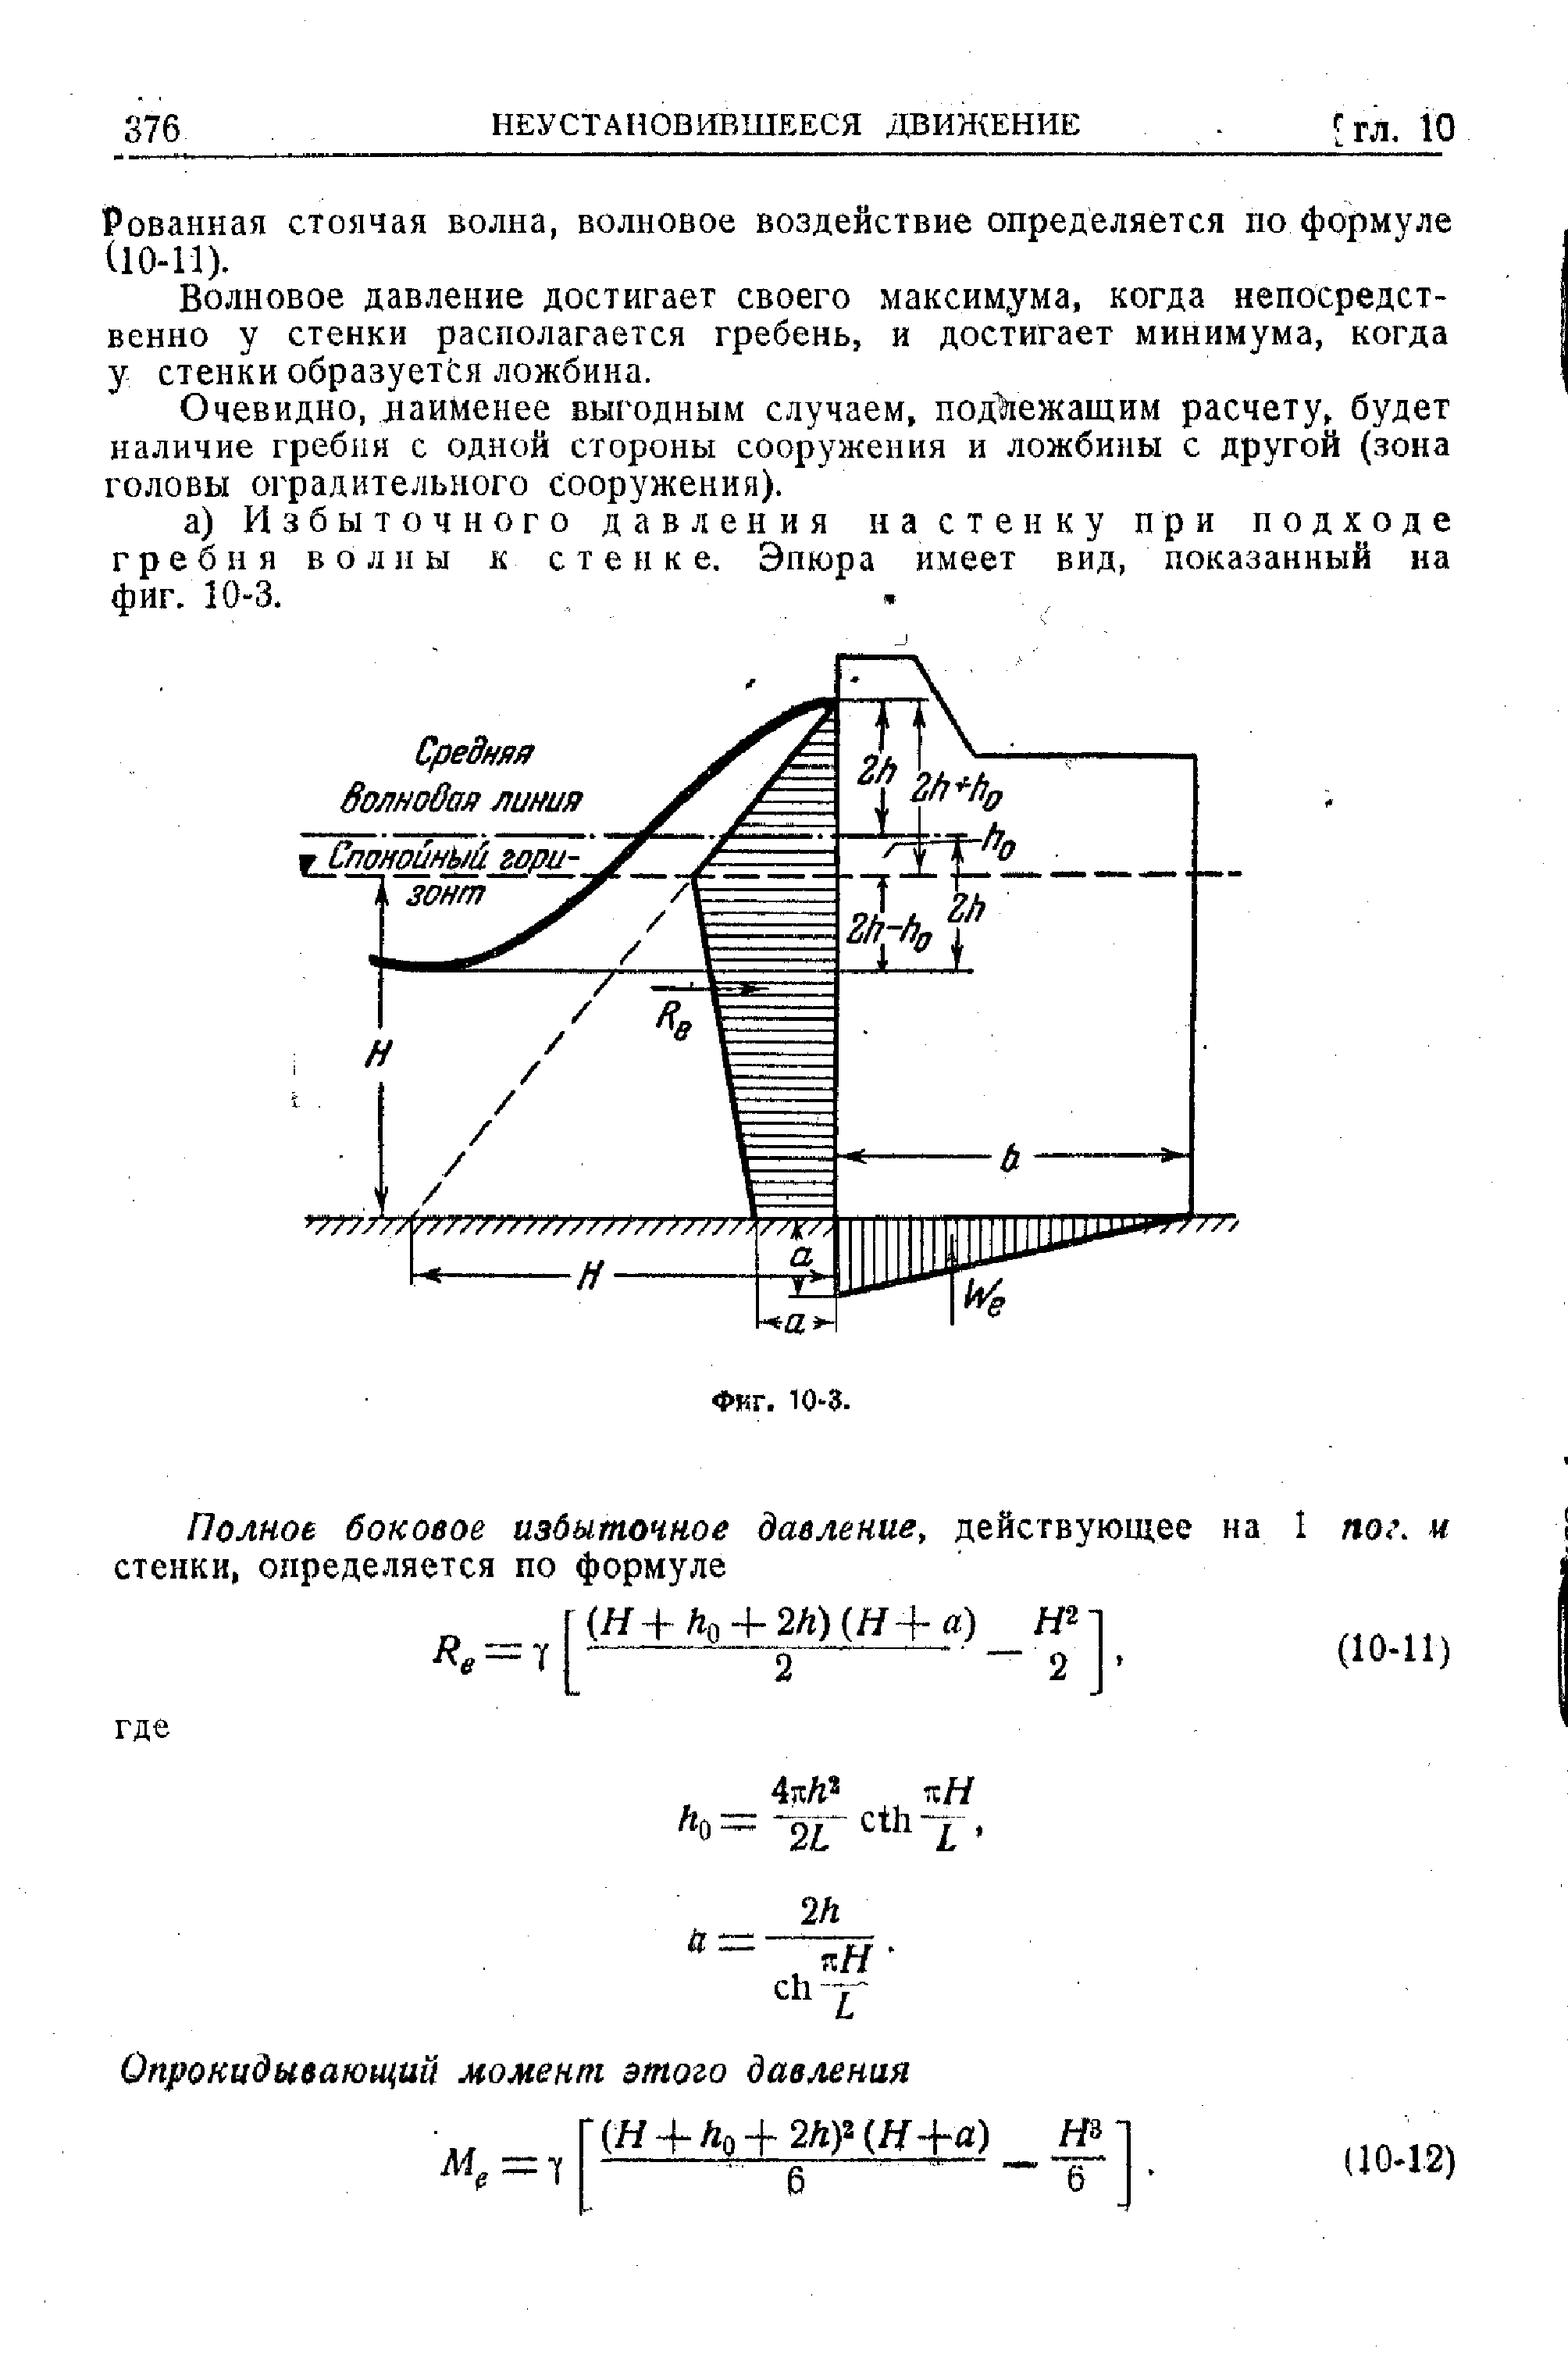 Рованная стоячая волна, волновое воздействие определяется по формуле (10-11).